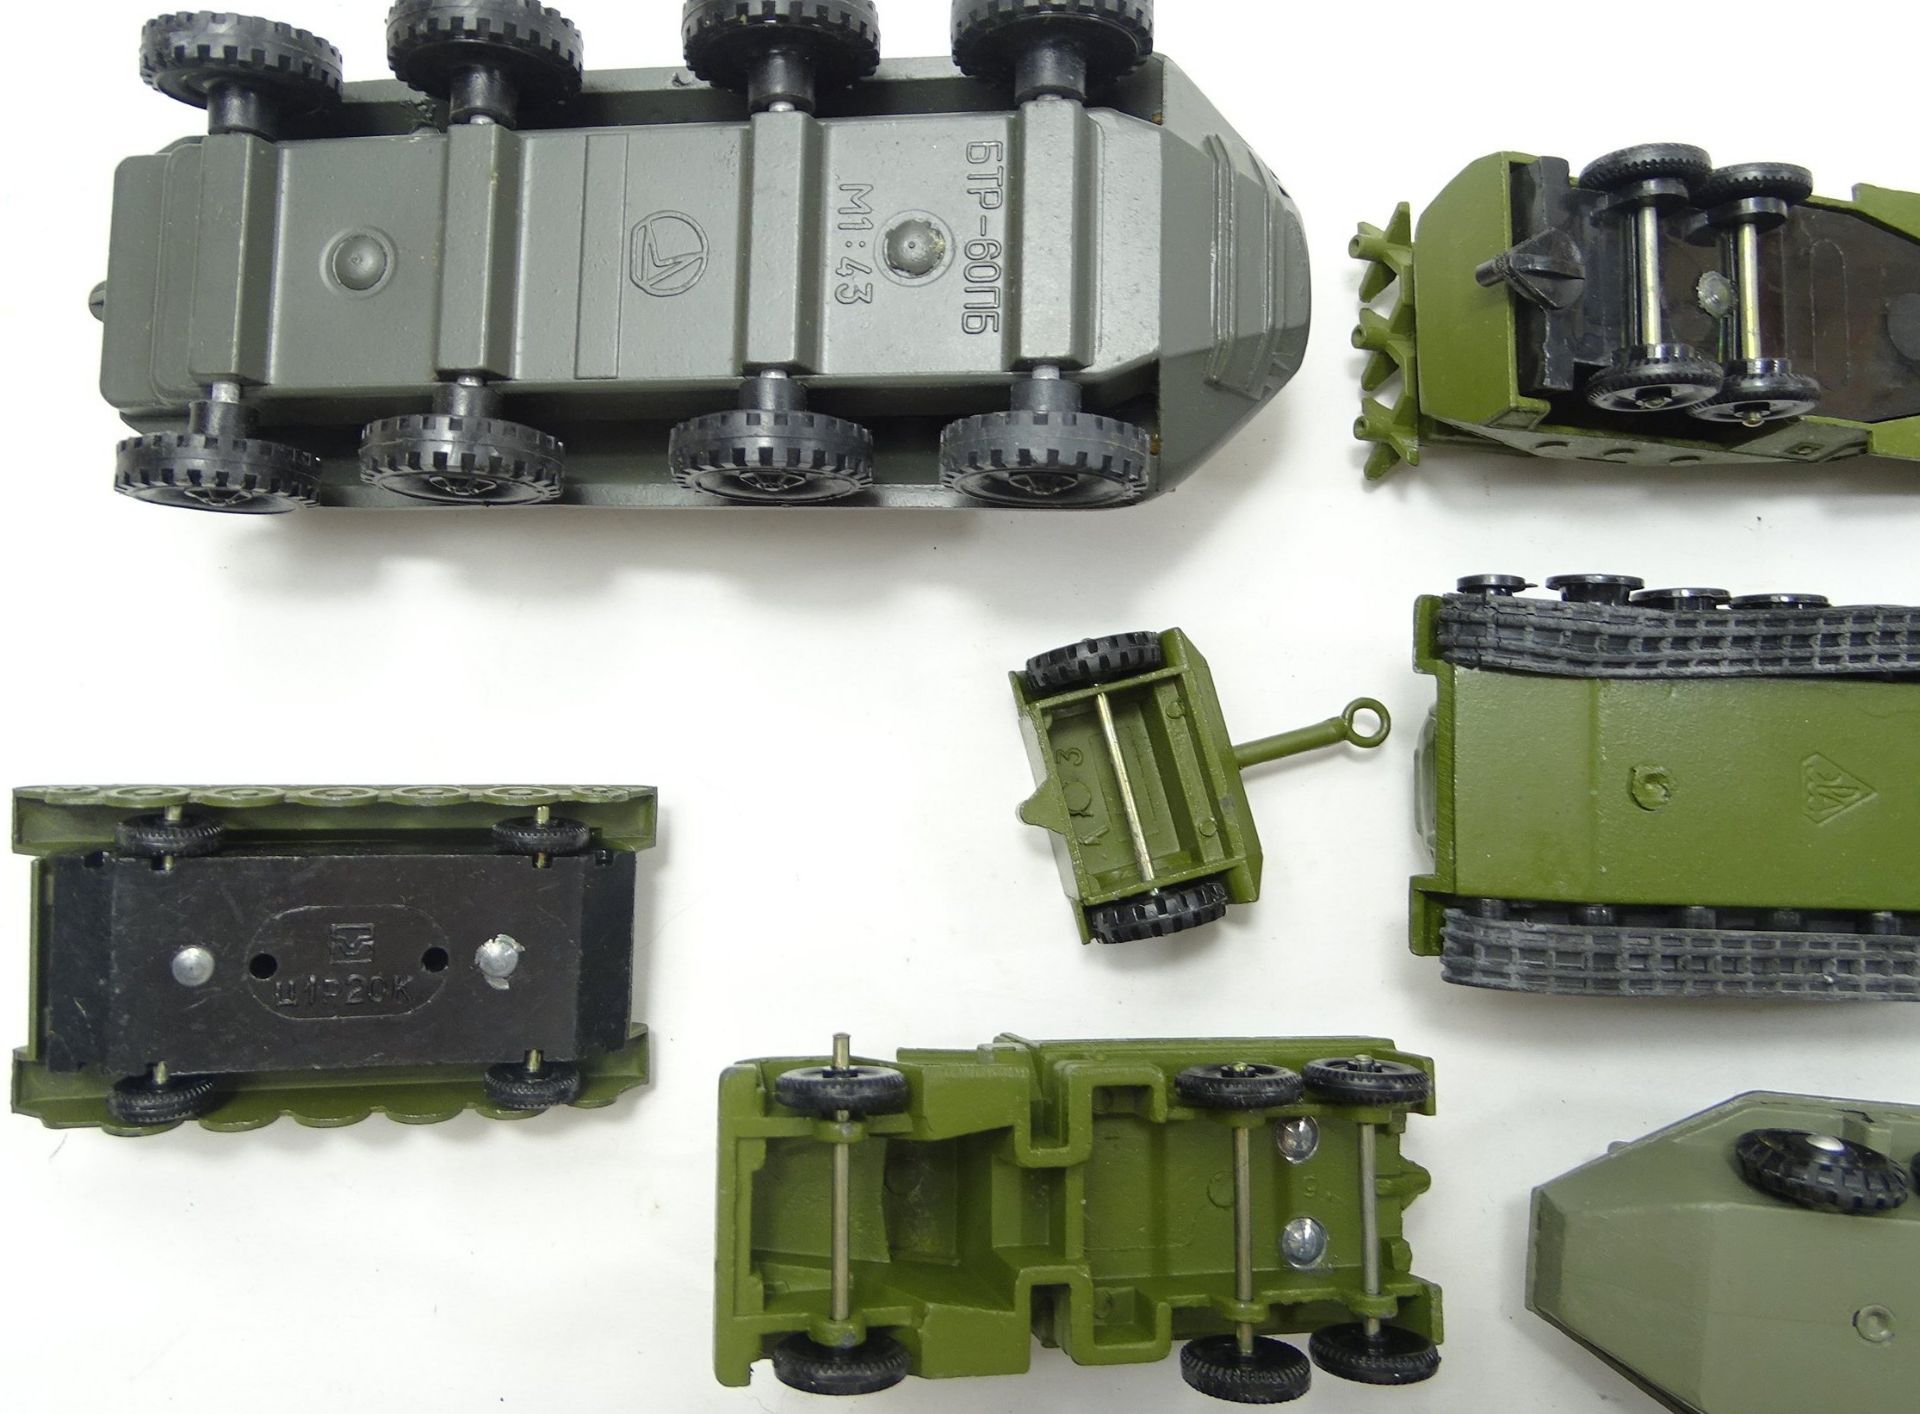 12 Panzer- bzw. Militärfahrzeugmodelle, Metall, größter Panzer: L. 23 cm, B. 7 cm, mit Altersspuren - Bild 6 aus 6